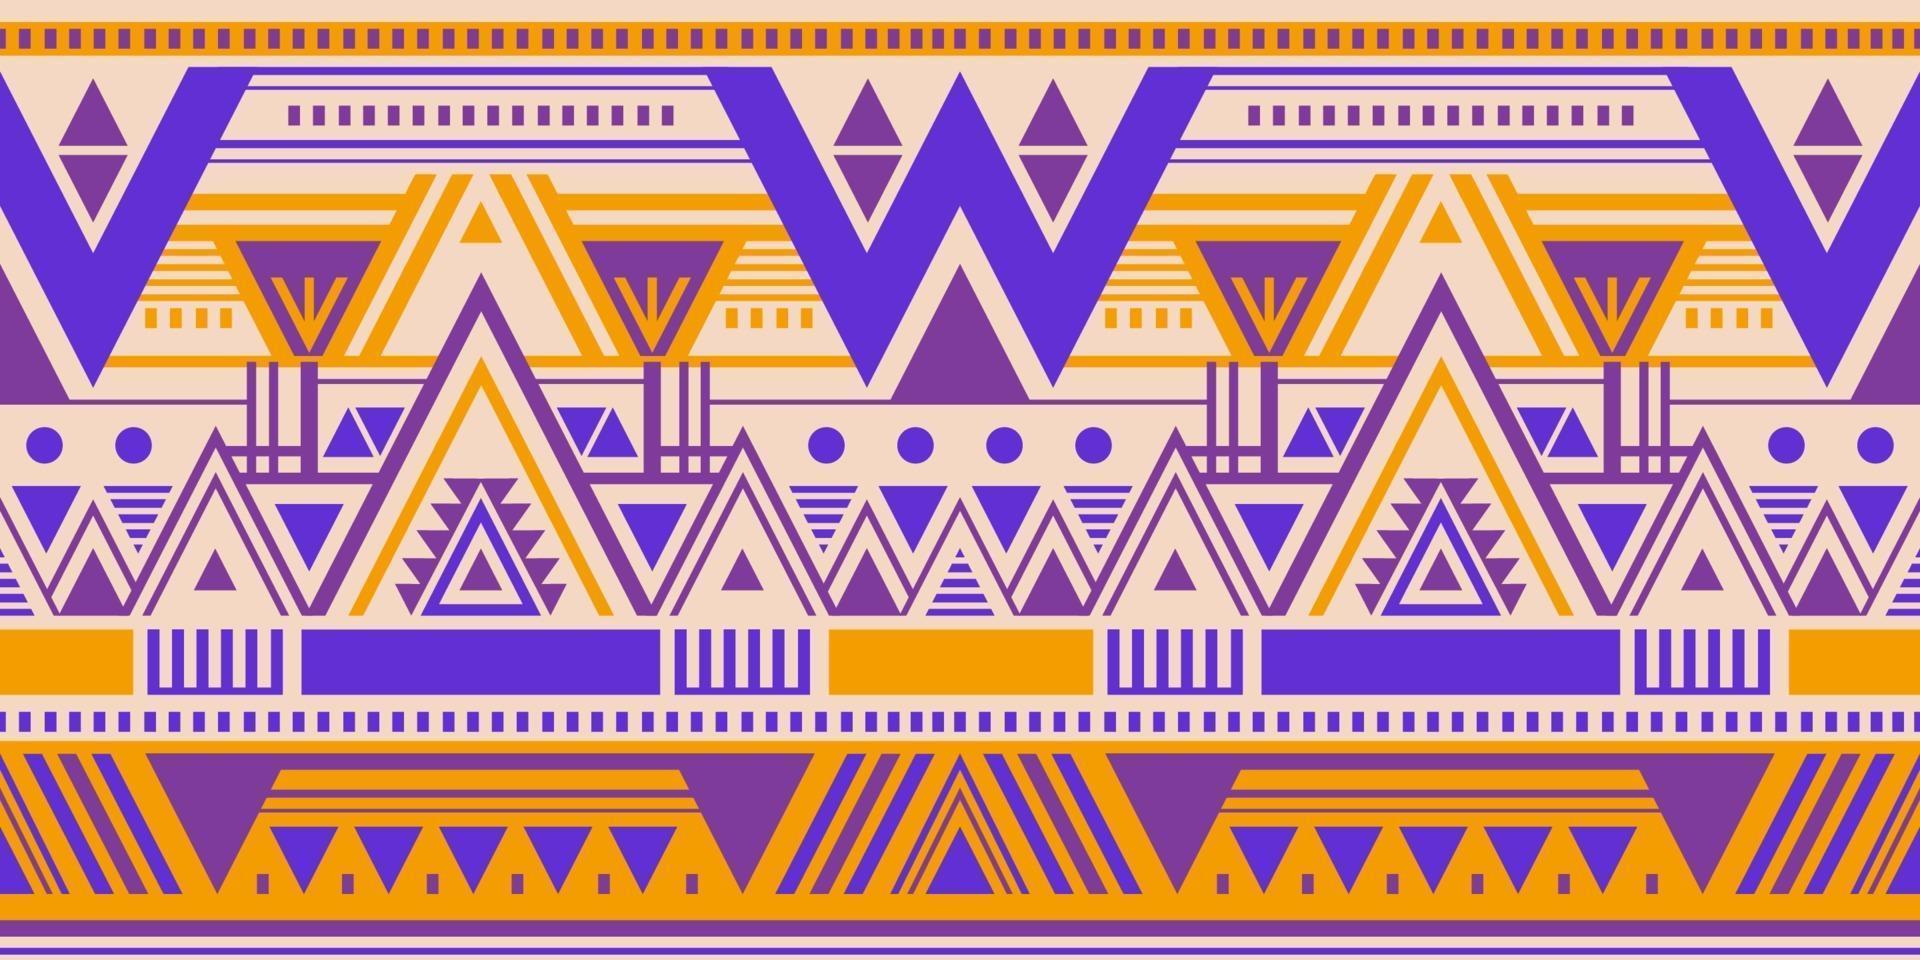 Reticolo senza giunte di vettore tribale multicolore con triangoli di doodle. Origine etnica. stampa d'arte geometrica astratta azteca per carta da parati, disegno di stoffa, tessuto, copertina, modello tessile.